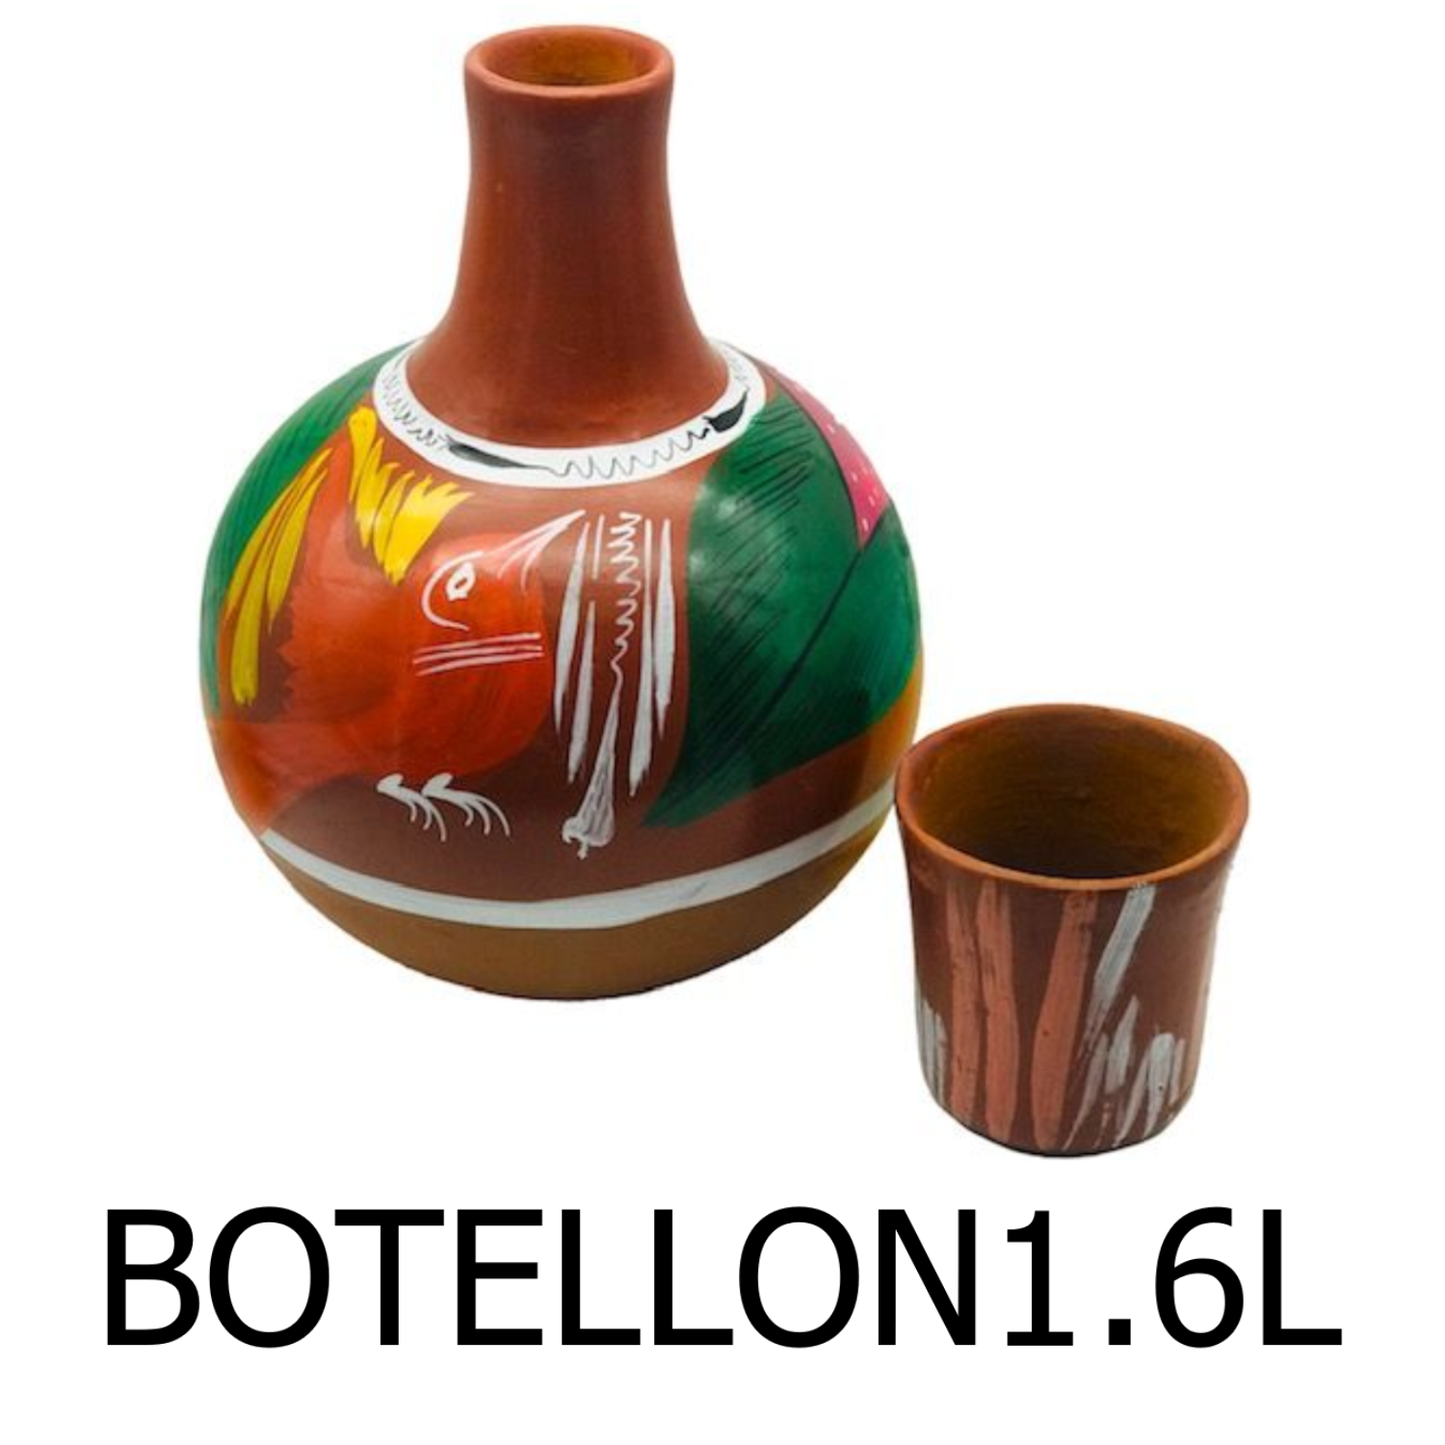 1.6L Colored Decoration Jug - Botellon de Barro Decorado